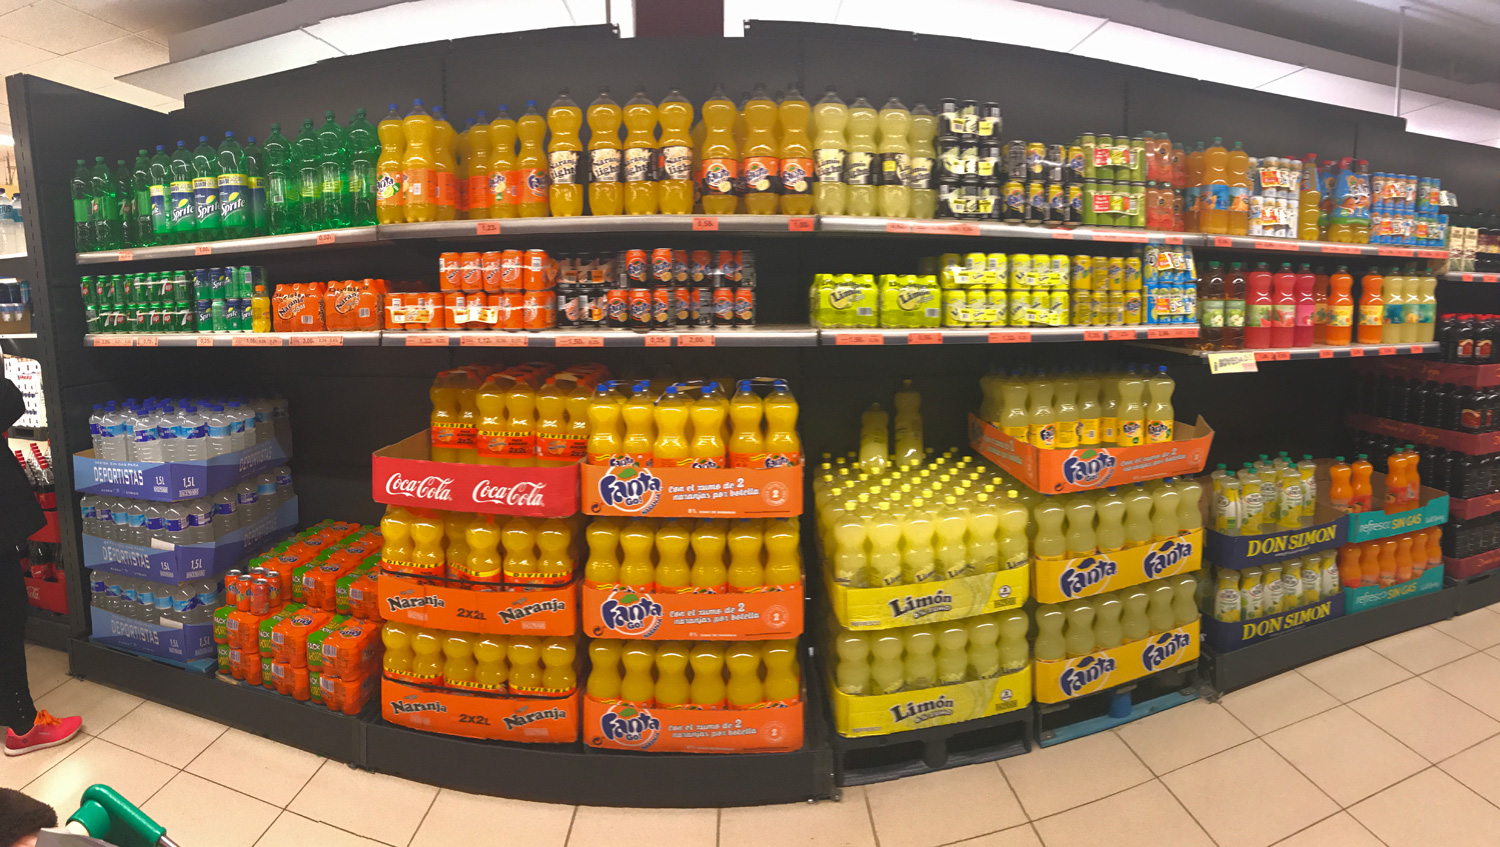 bebidas azucaradas / Coca-Cola / Fanta / Sprite / salud / carbonatadas / supermercado